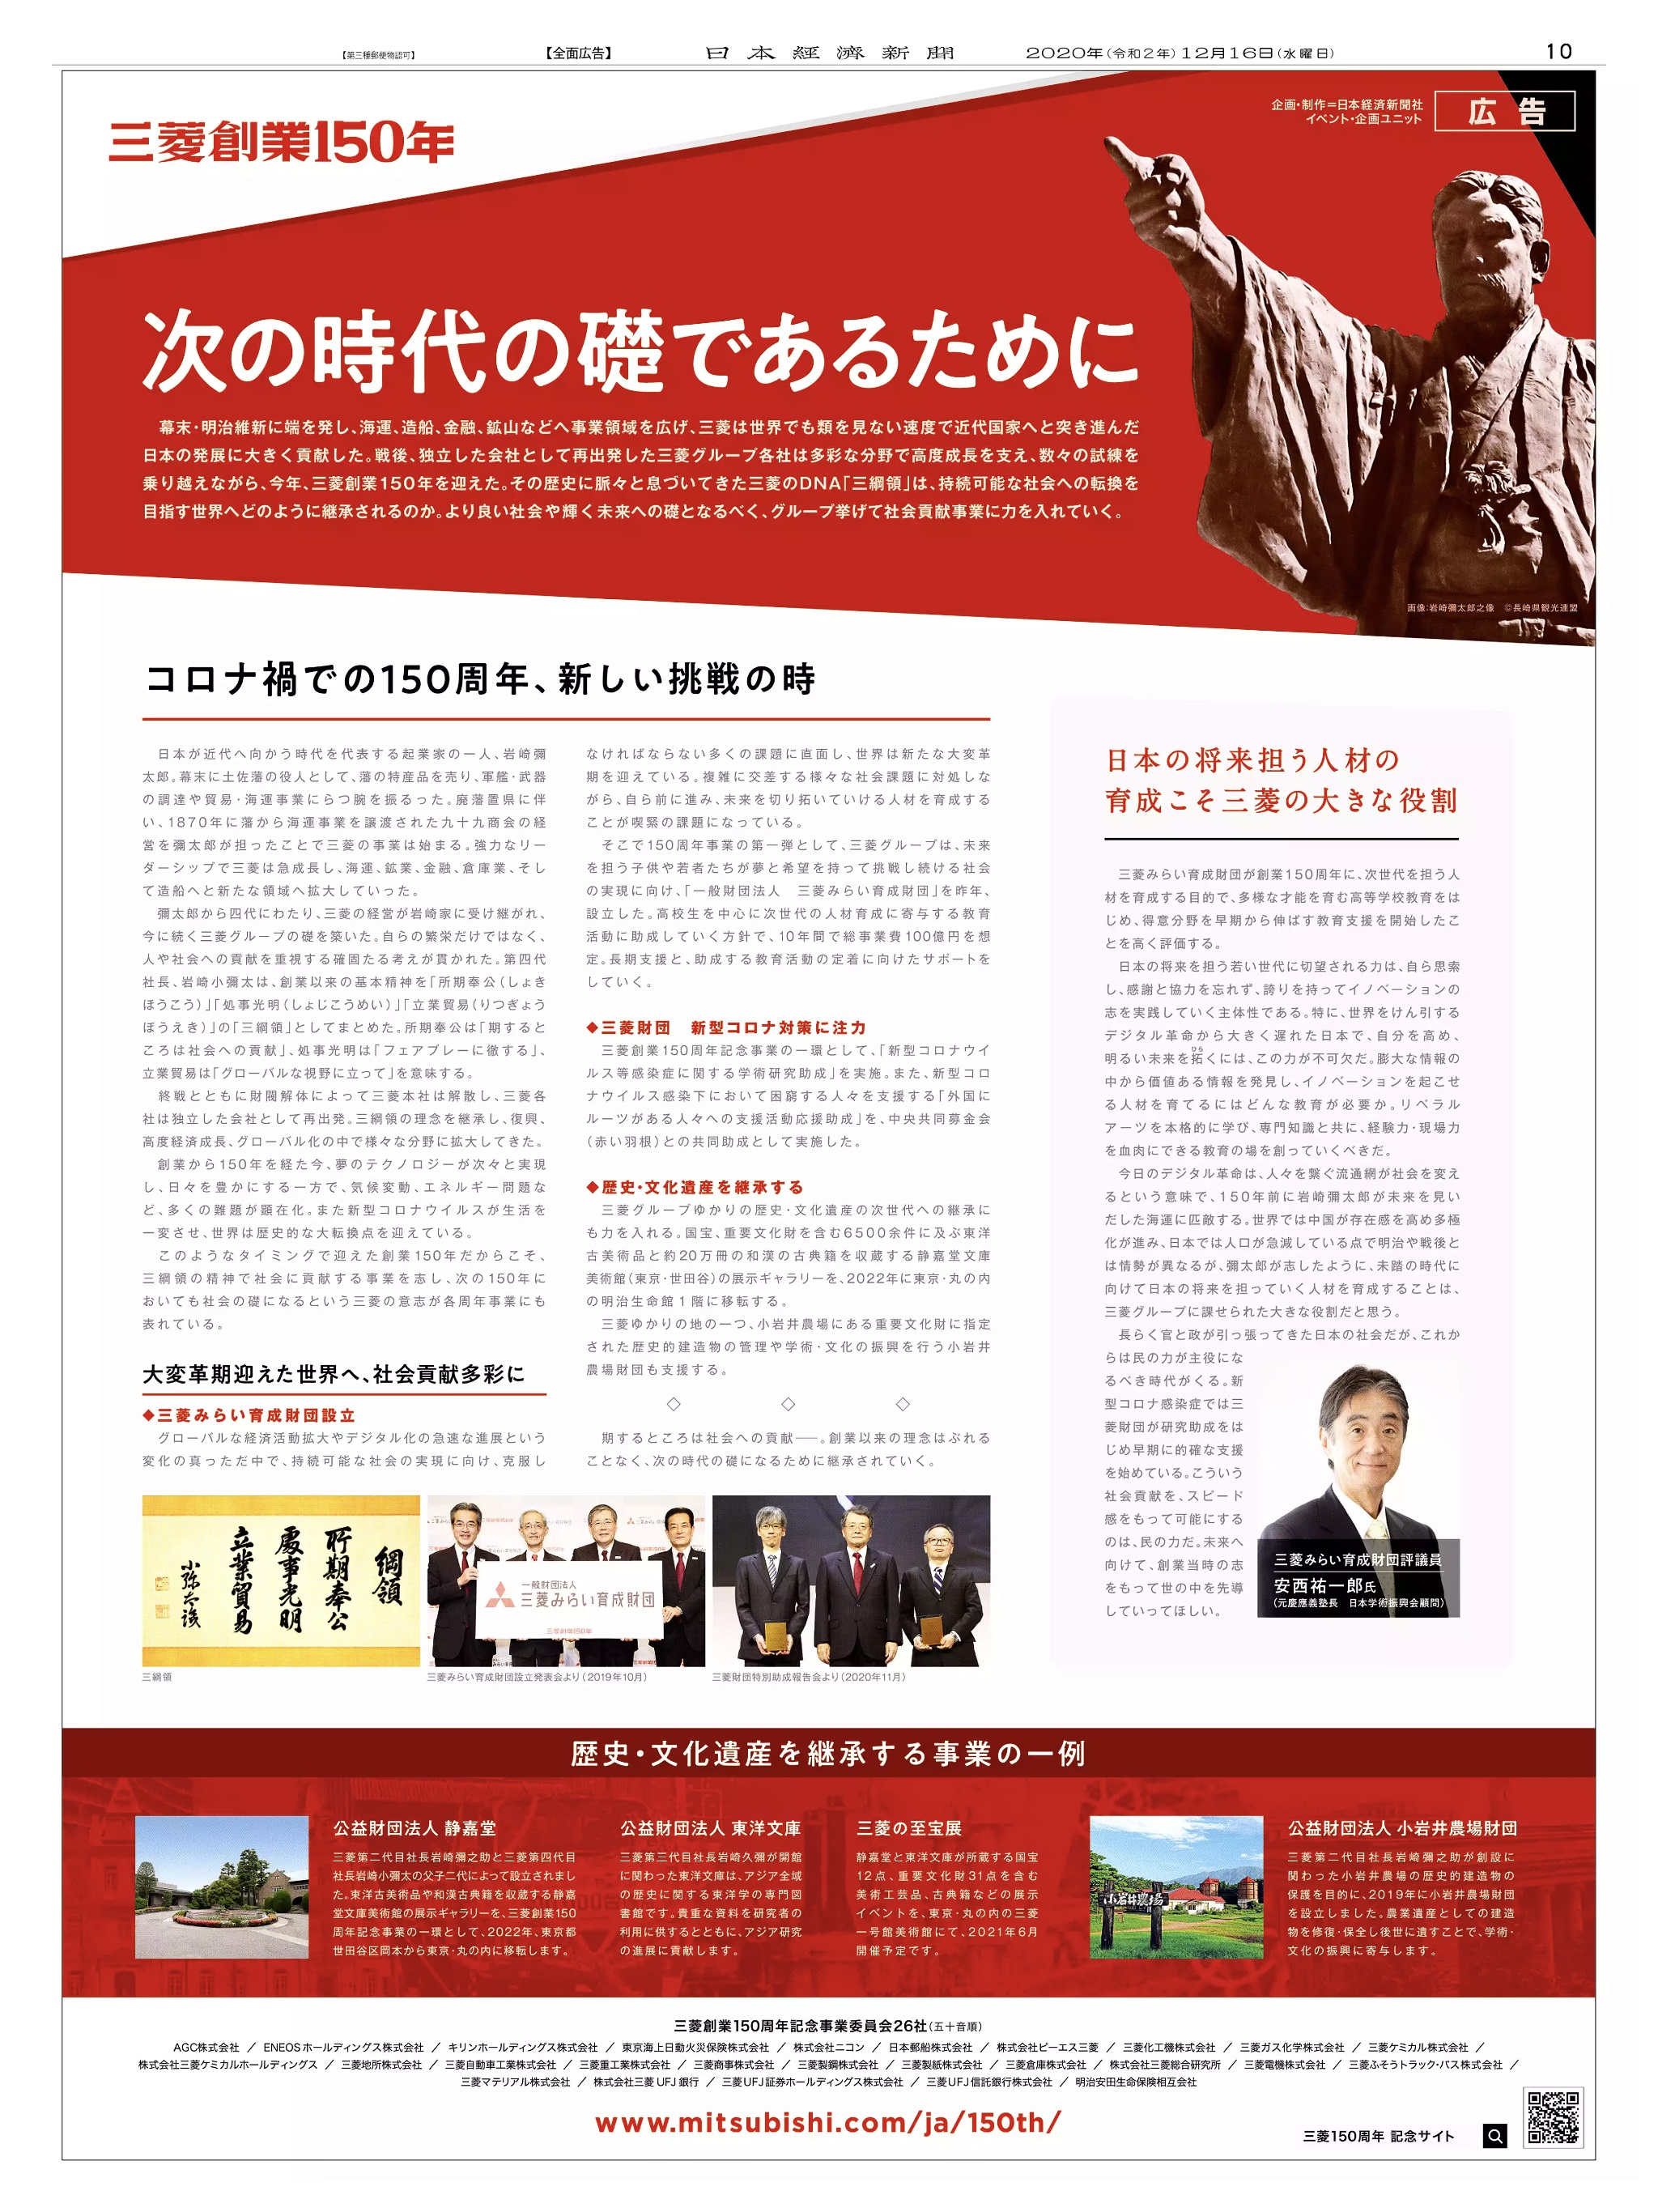 周年記念広告事例 「三菱創業150周年」